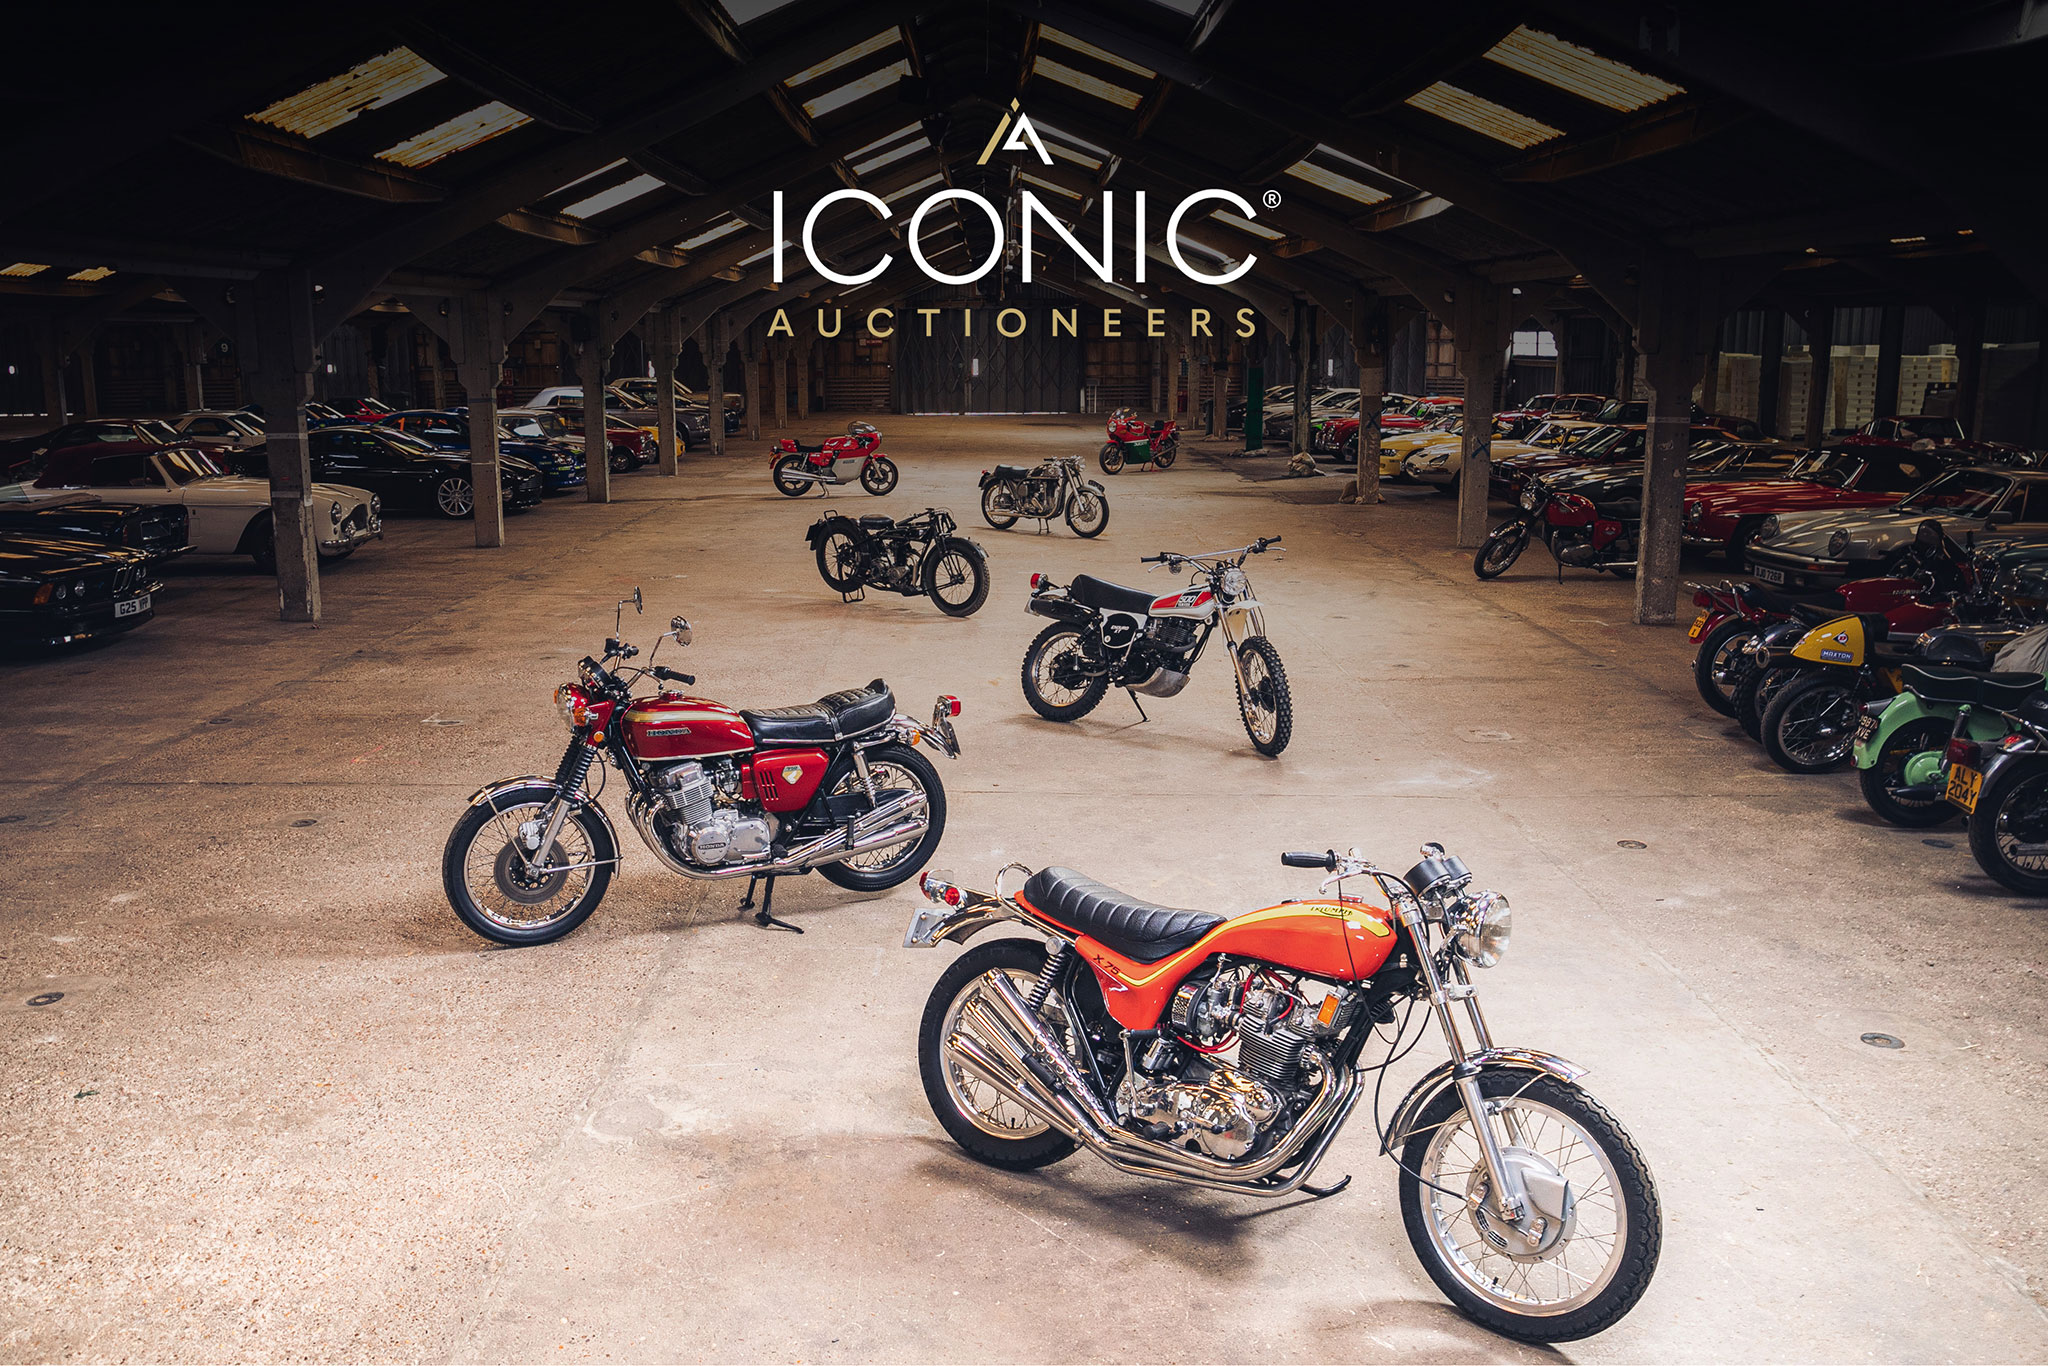 Iconic Auctioneers – outre les autos, un grand choix de motos est aussi proposé.